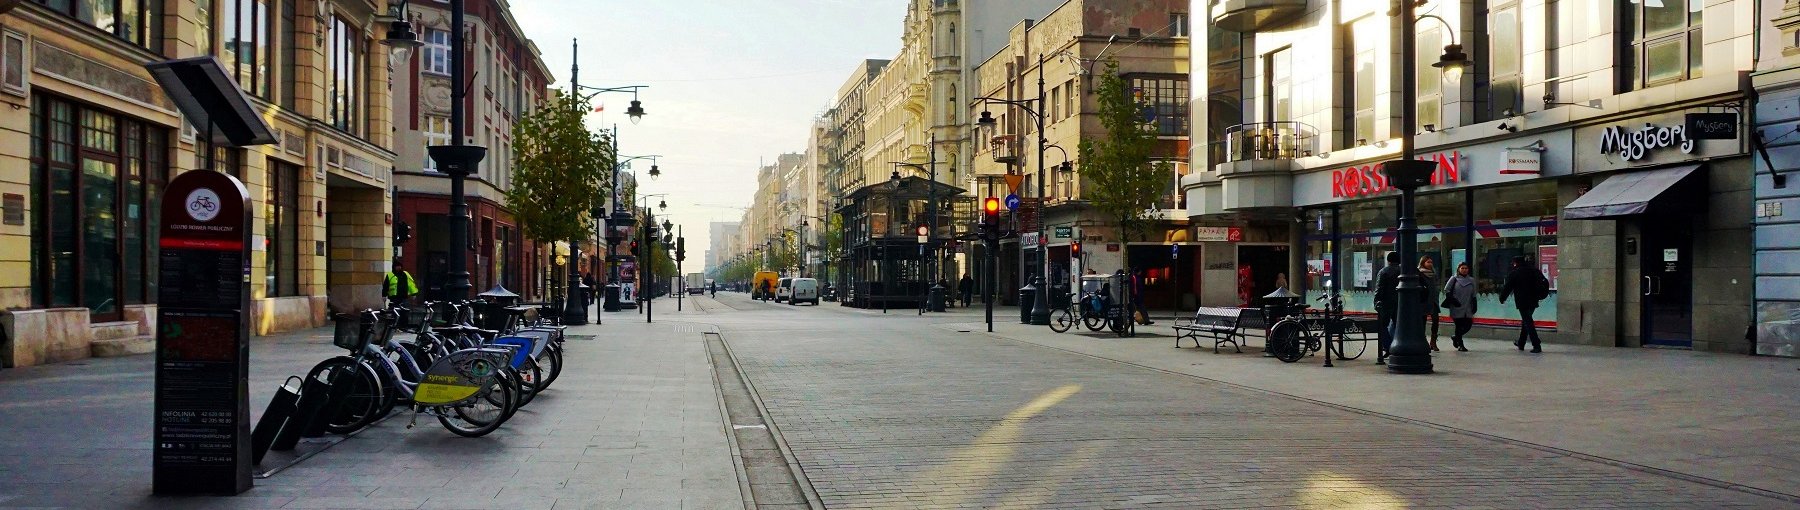 Ulica Piotrkowska – najbardziej reprezentacyjna część Łodzi. Fot. Mariola Anna S/Shutterstock